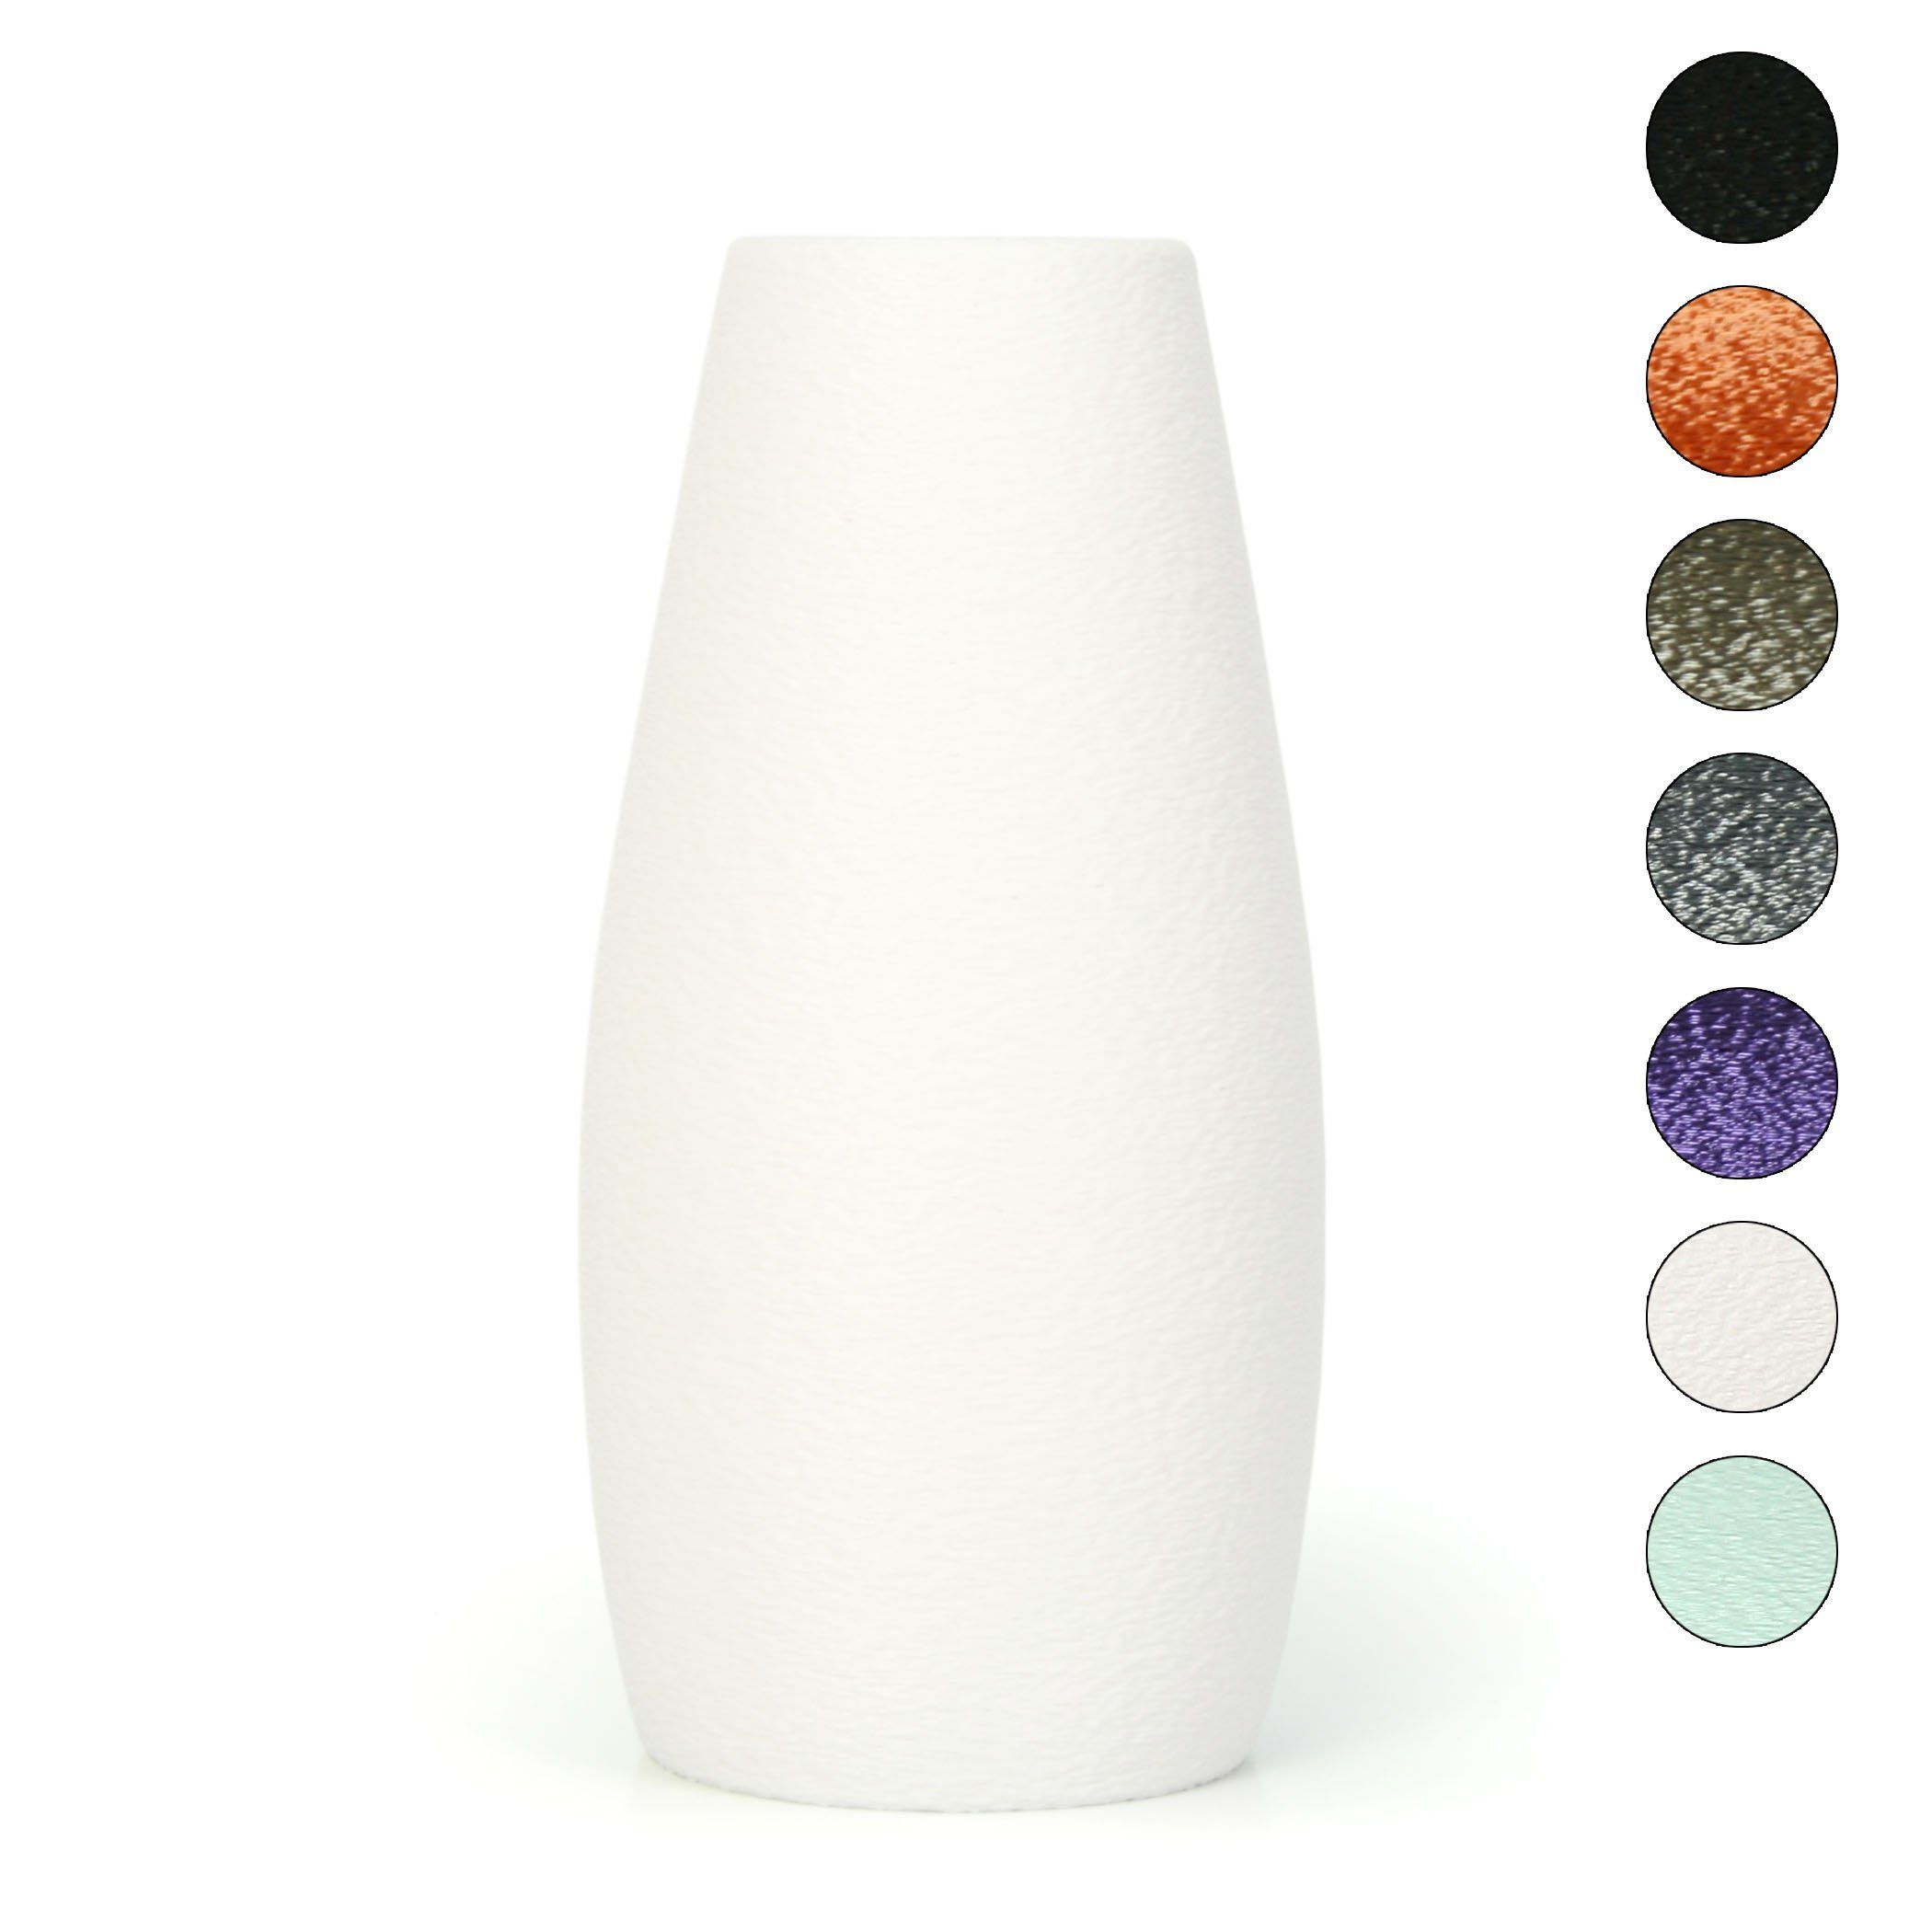 Kreative Feder Dekovase Designer Vase – Dekorative Blumenvase aus Bio-Kunststoff, aus nachwachsenden Rohstoffen; wasserdicht & bruchsicher White | Dekovasen